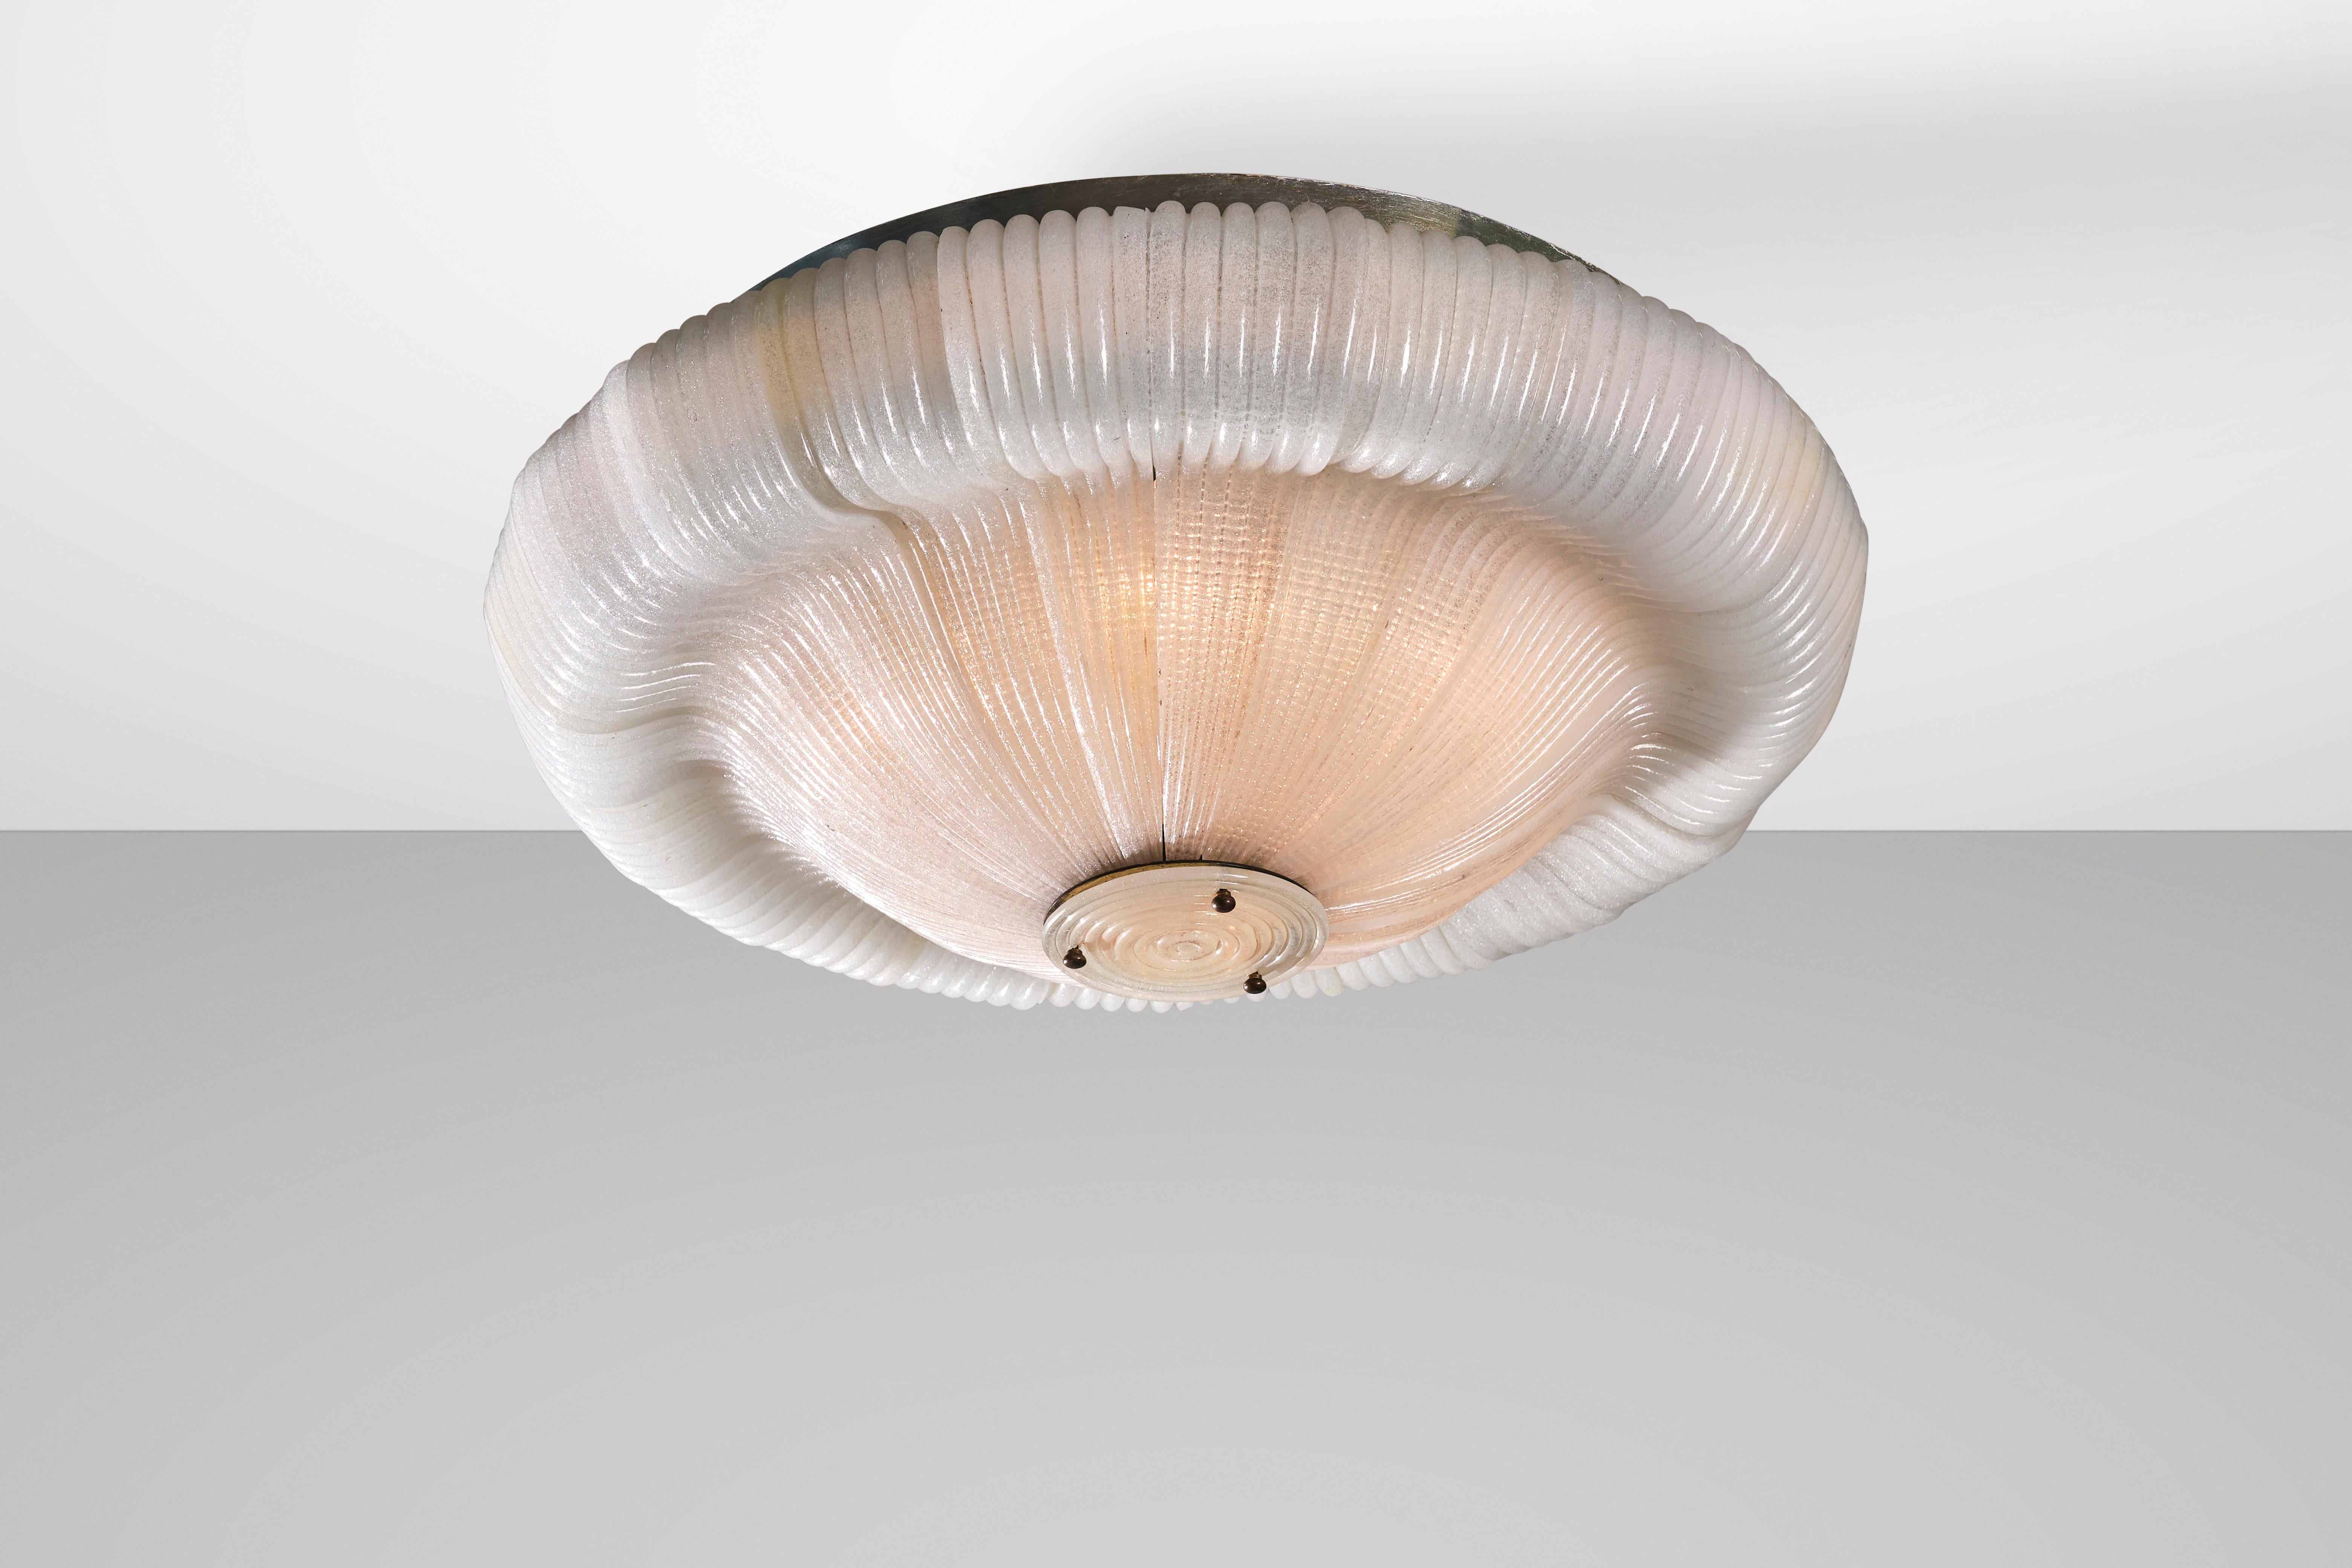 Mid-20th Century Venini 1940s Ceiling Lamp, Murano Cordonato Glass and Brass, Italian Design